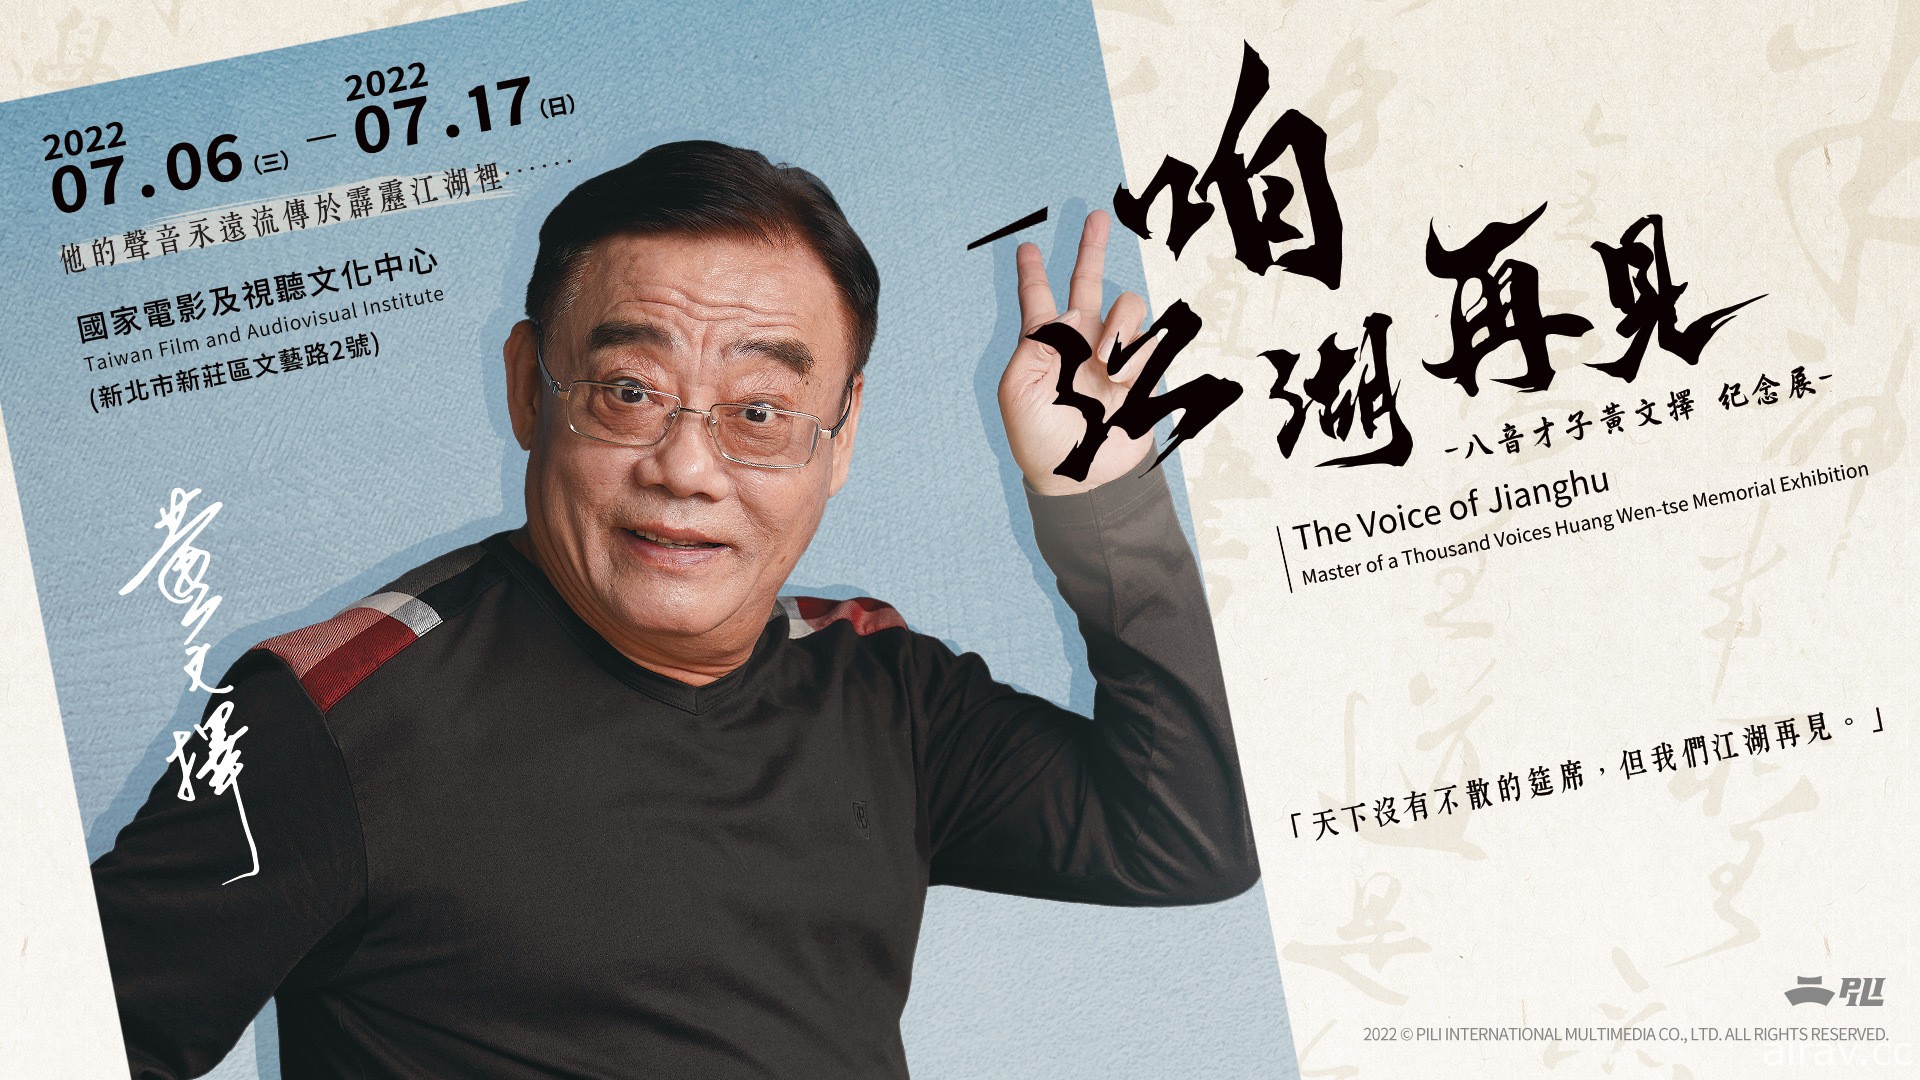 八音才子黃文擇紀念展「咱 江湖再見」7 月於國家電影及視聽文化中心舉辦